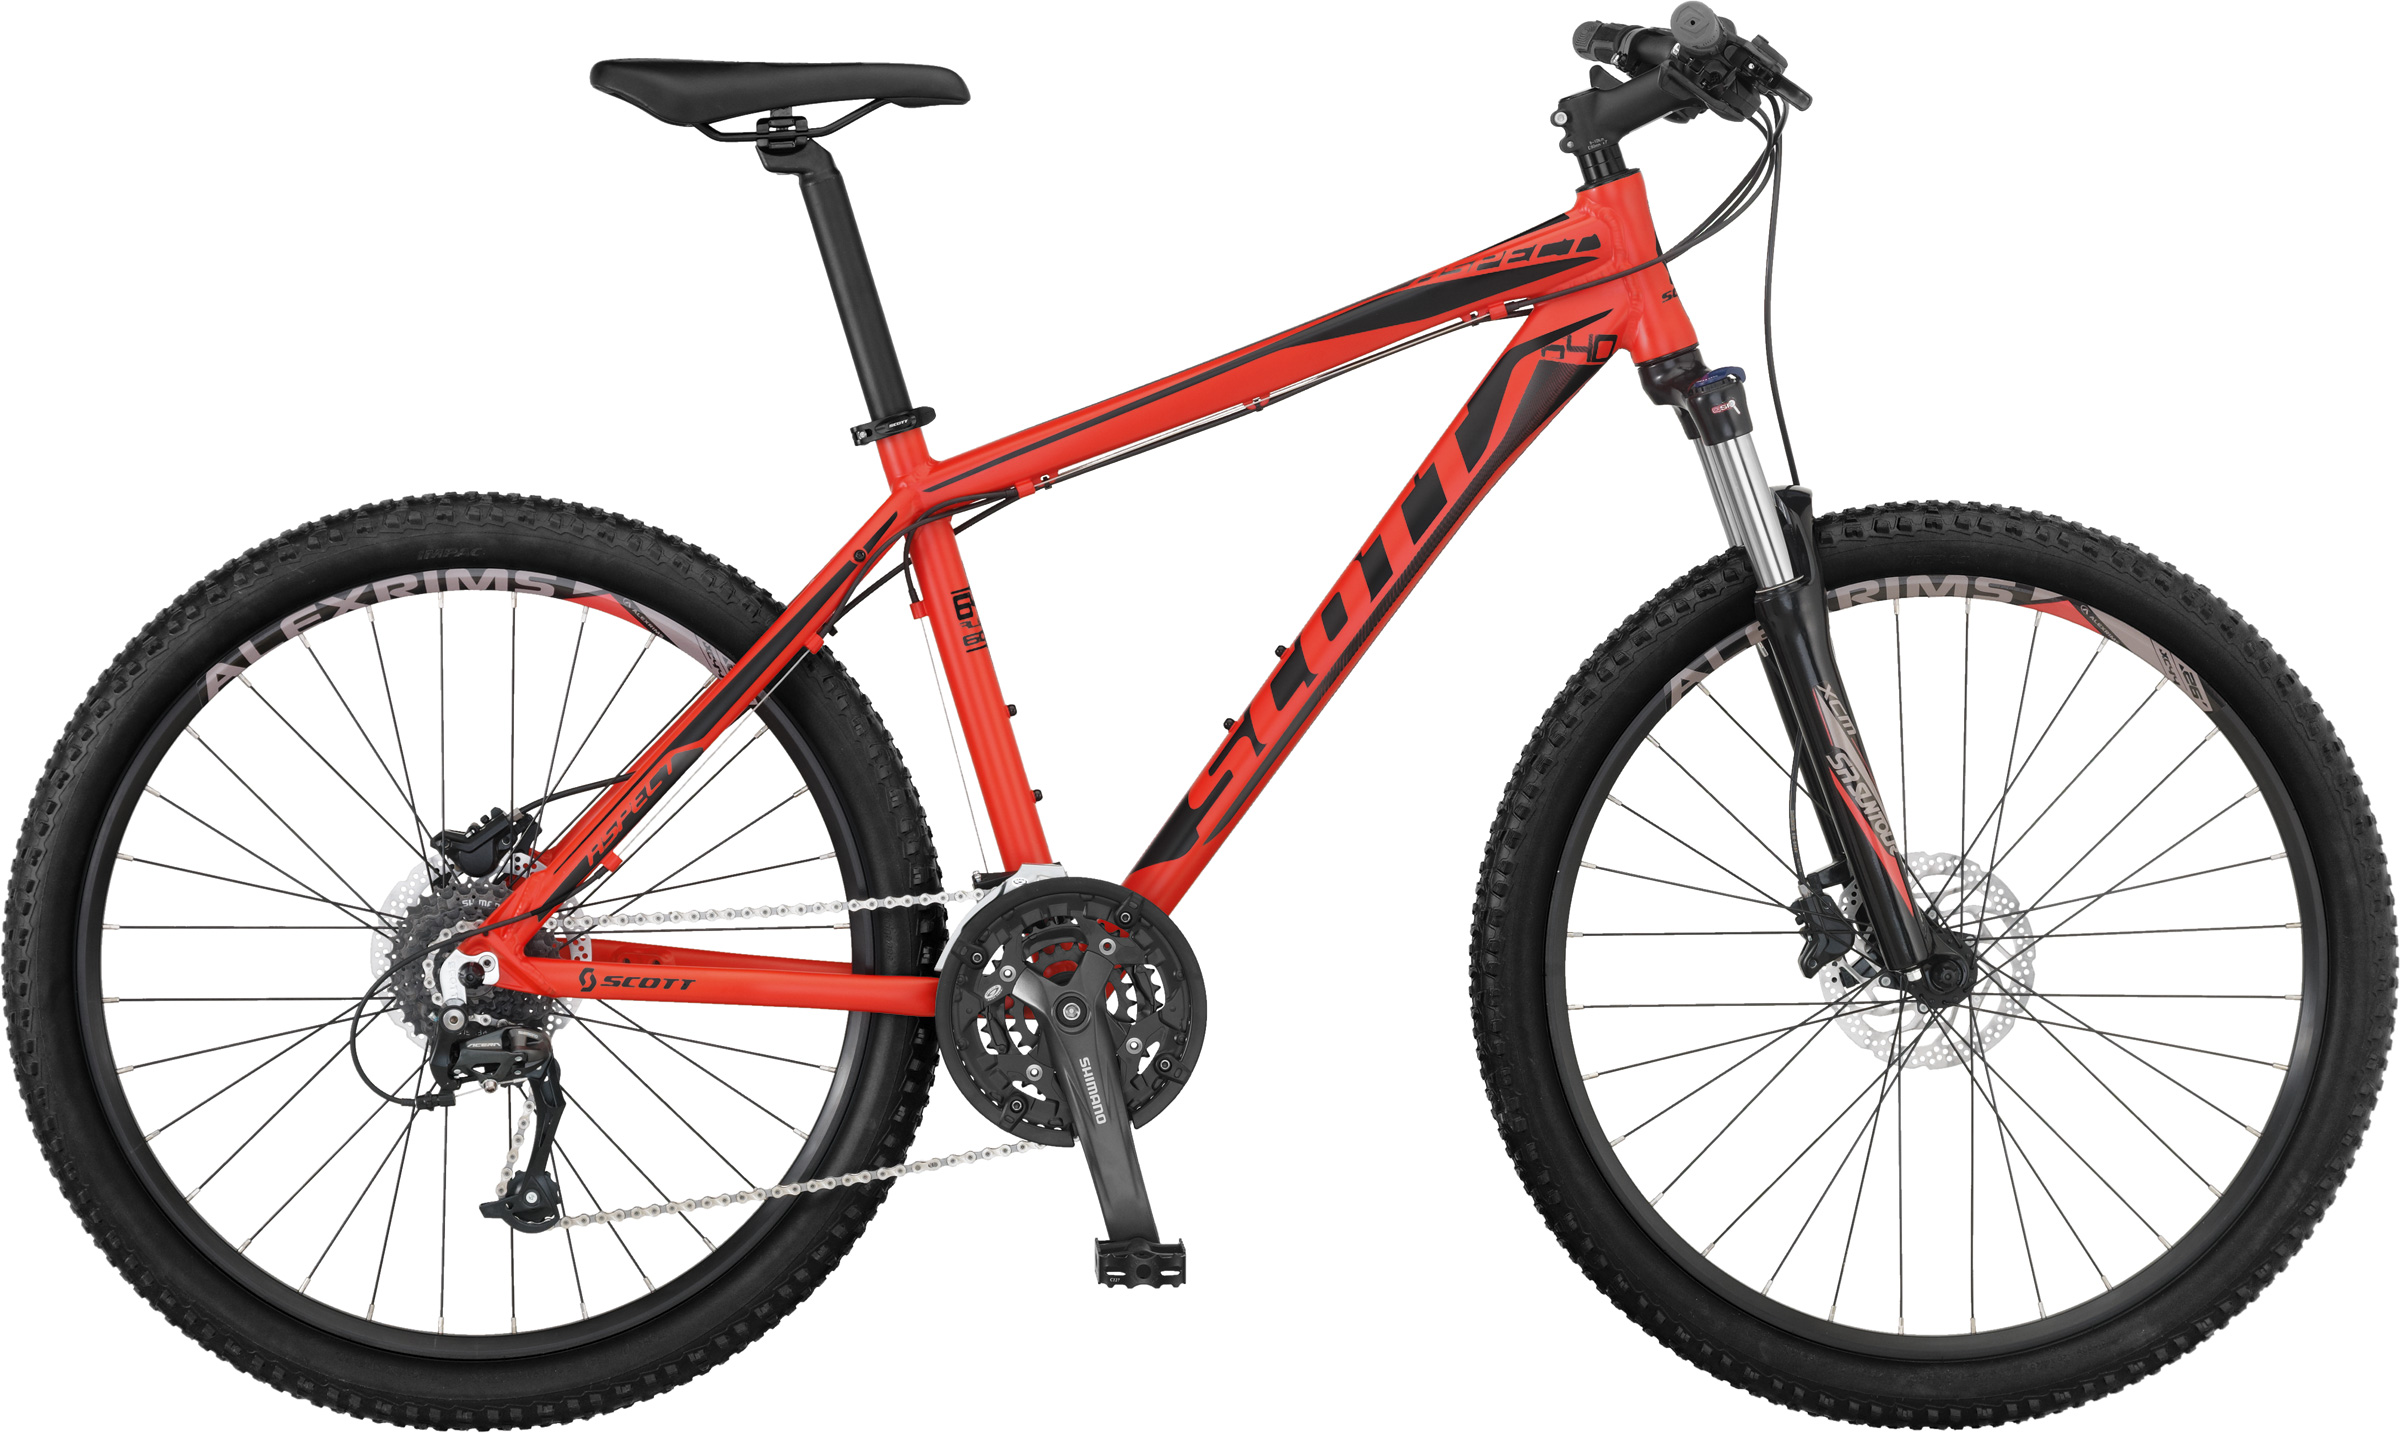 2013 Scott Aspect 640 - Bicycle Details 